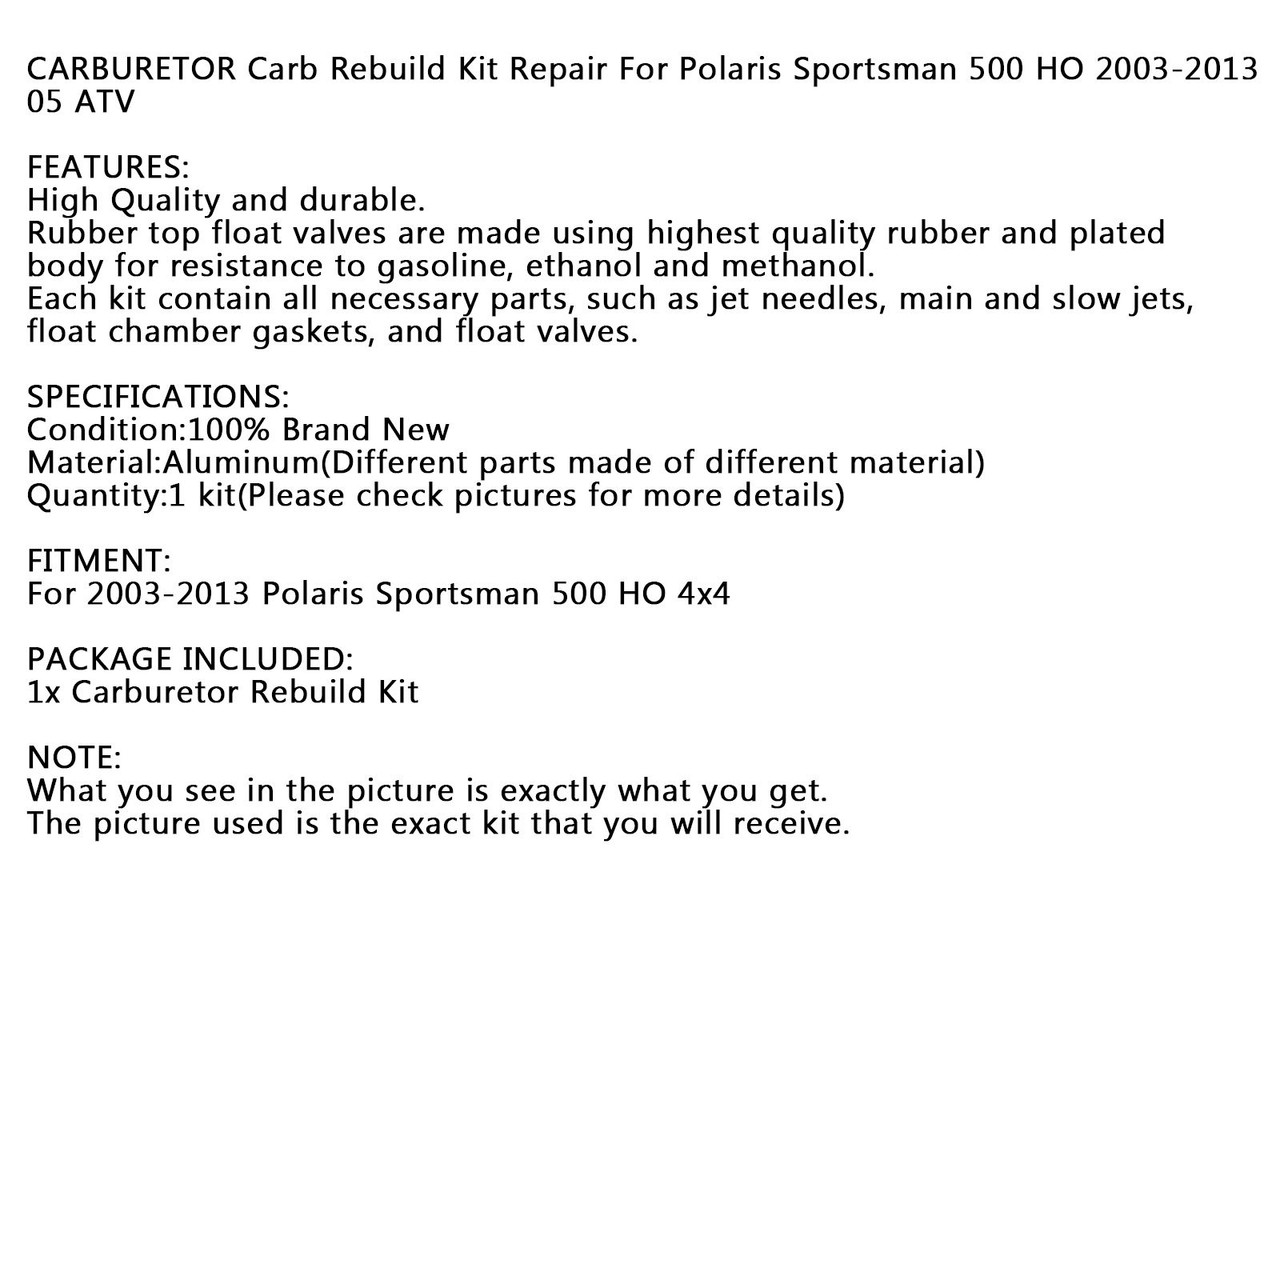 Carburetor Repair Carb Rebuild Kit For Polaris Sportsman 500 HO 4x4 2003-2013